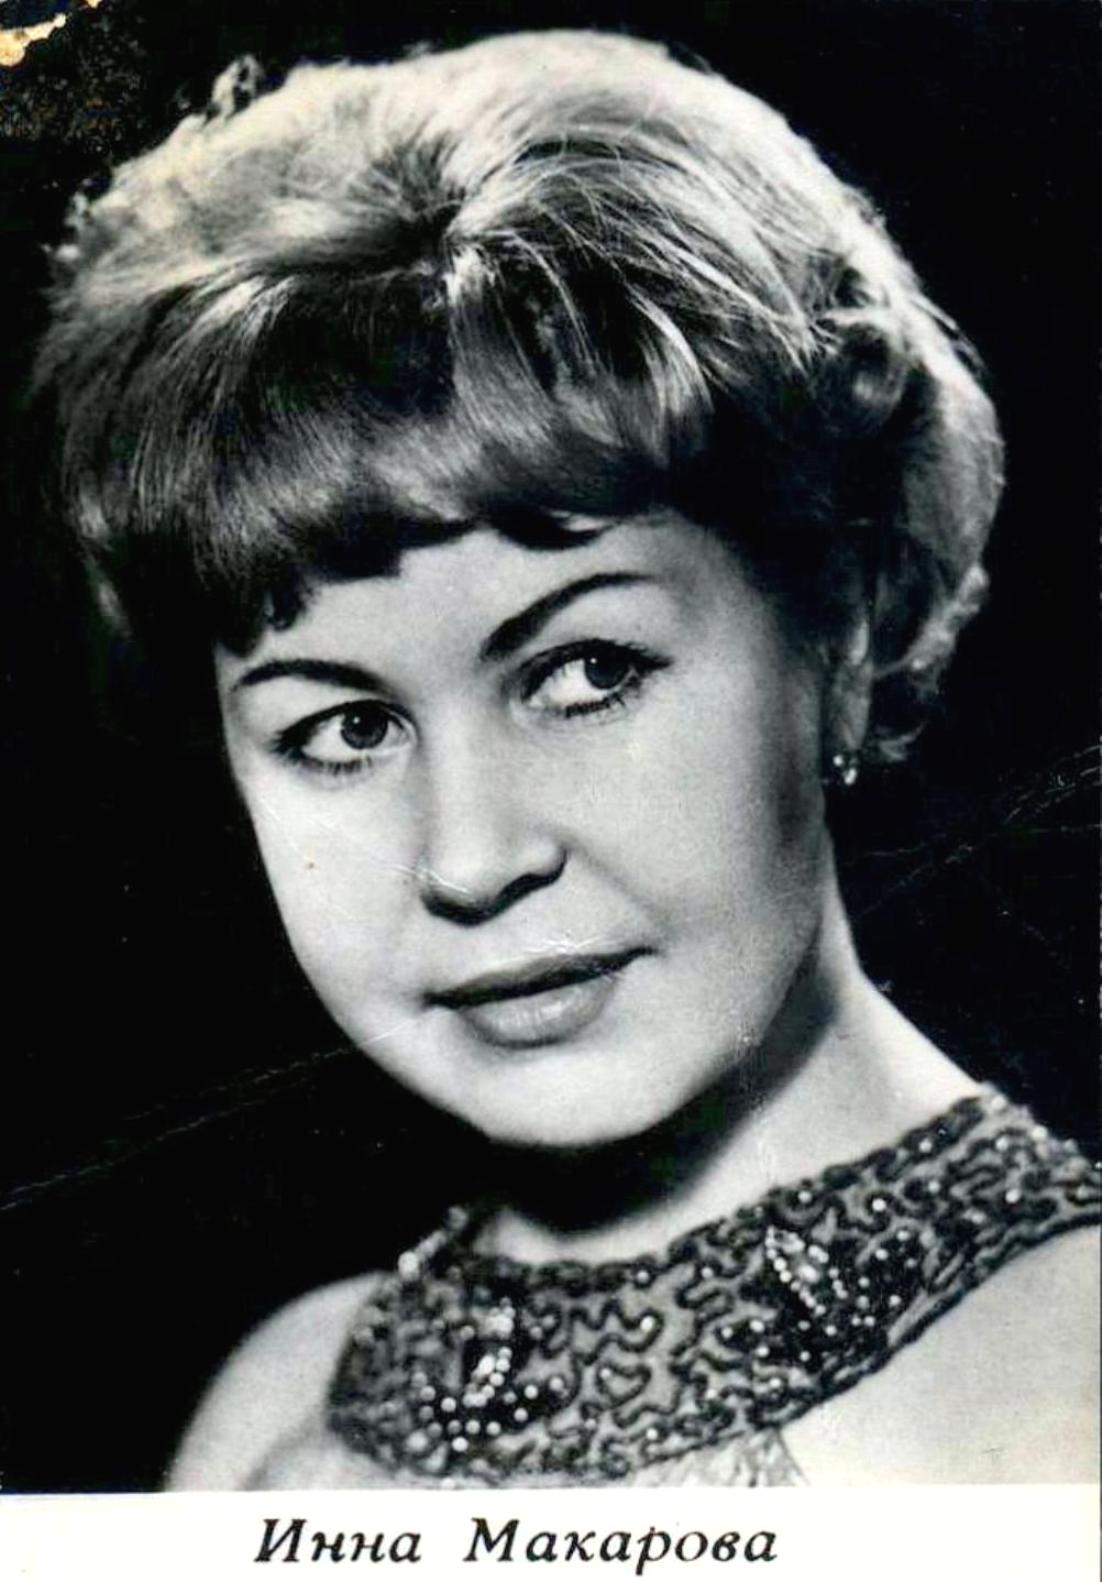 Инна Макарова. Актёры Советского кино, коллекция Анны Лукьяновой 